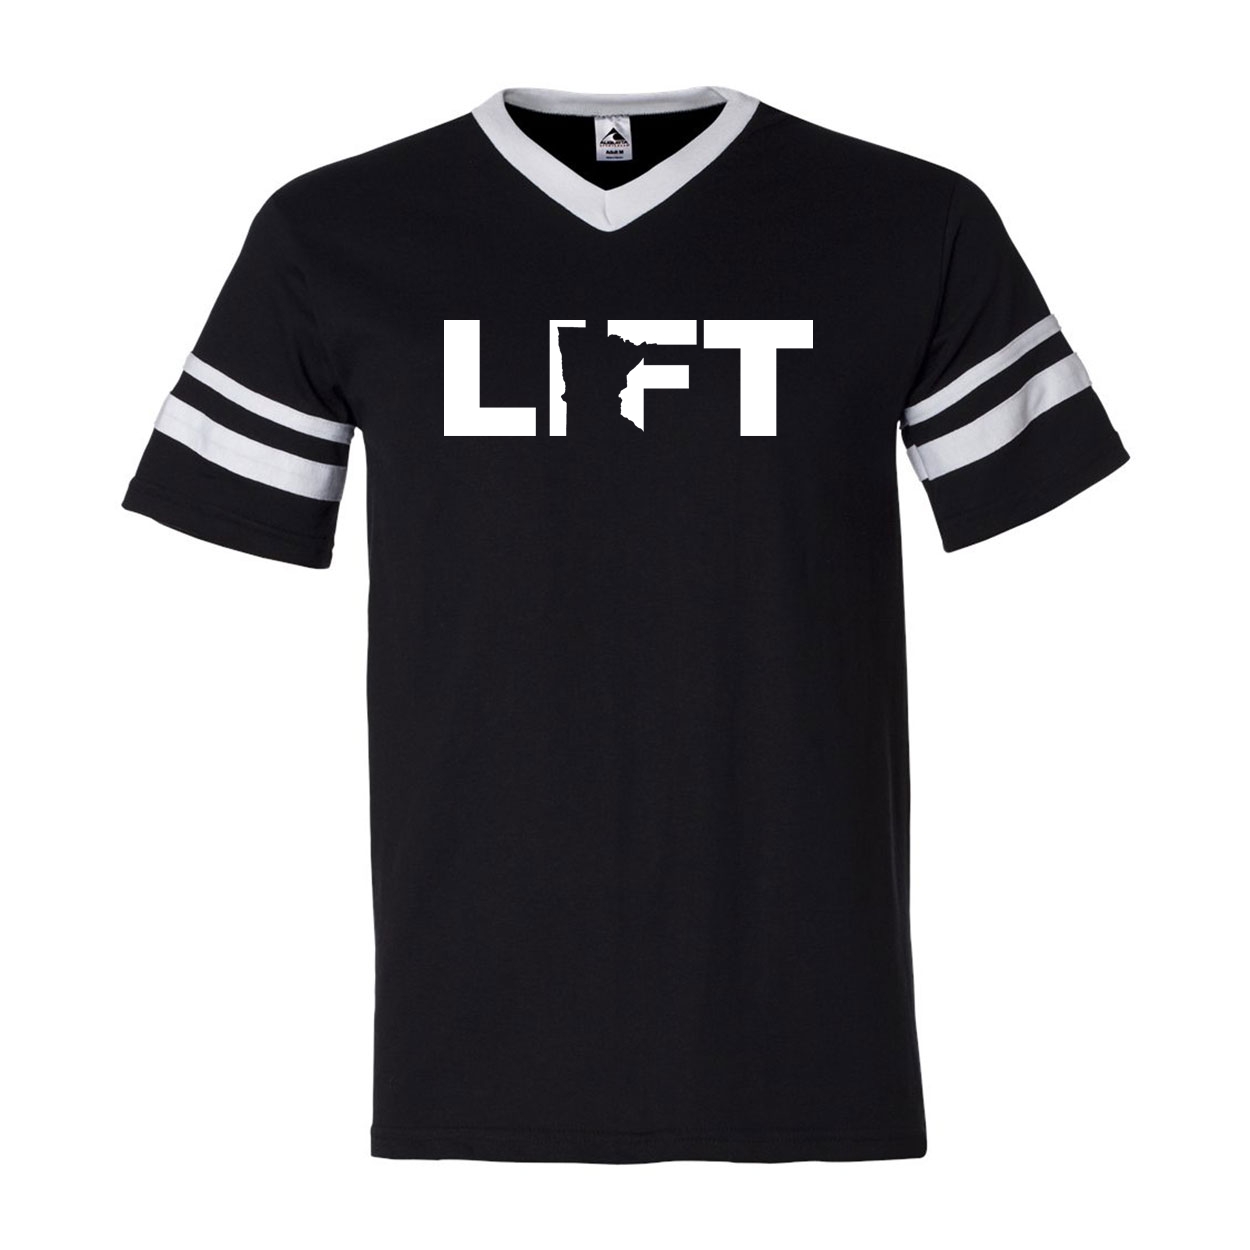 Lift Minnesota Classic Premium Striped Jersey T-Shirt Black/White (White Logo)